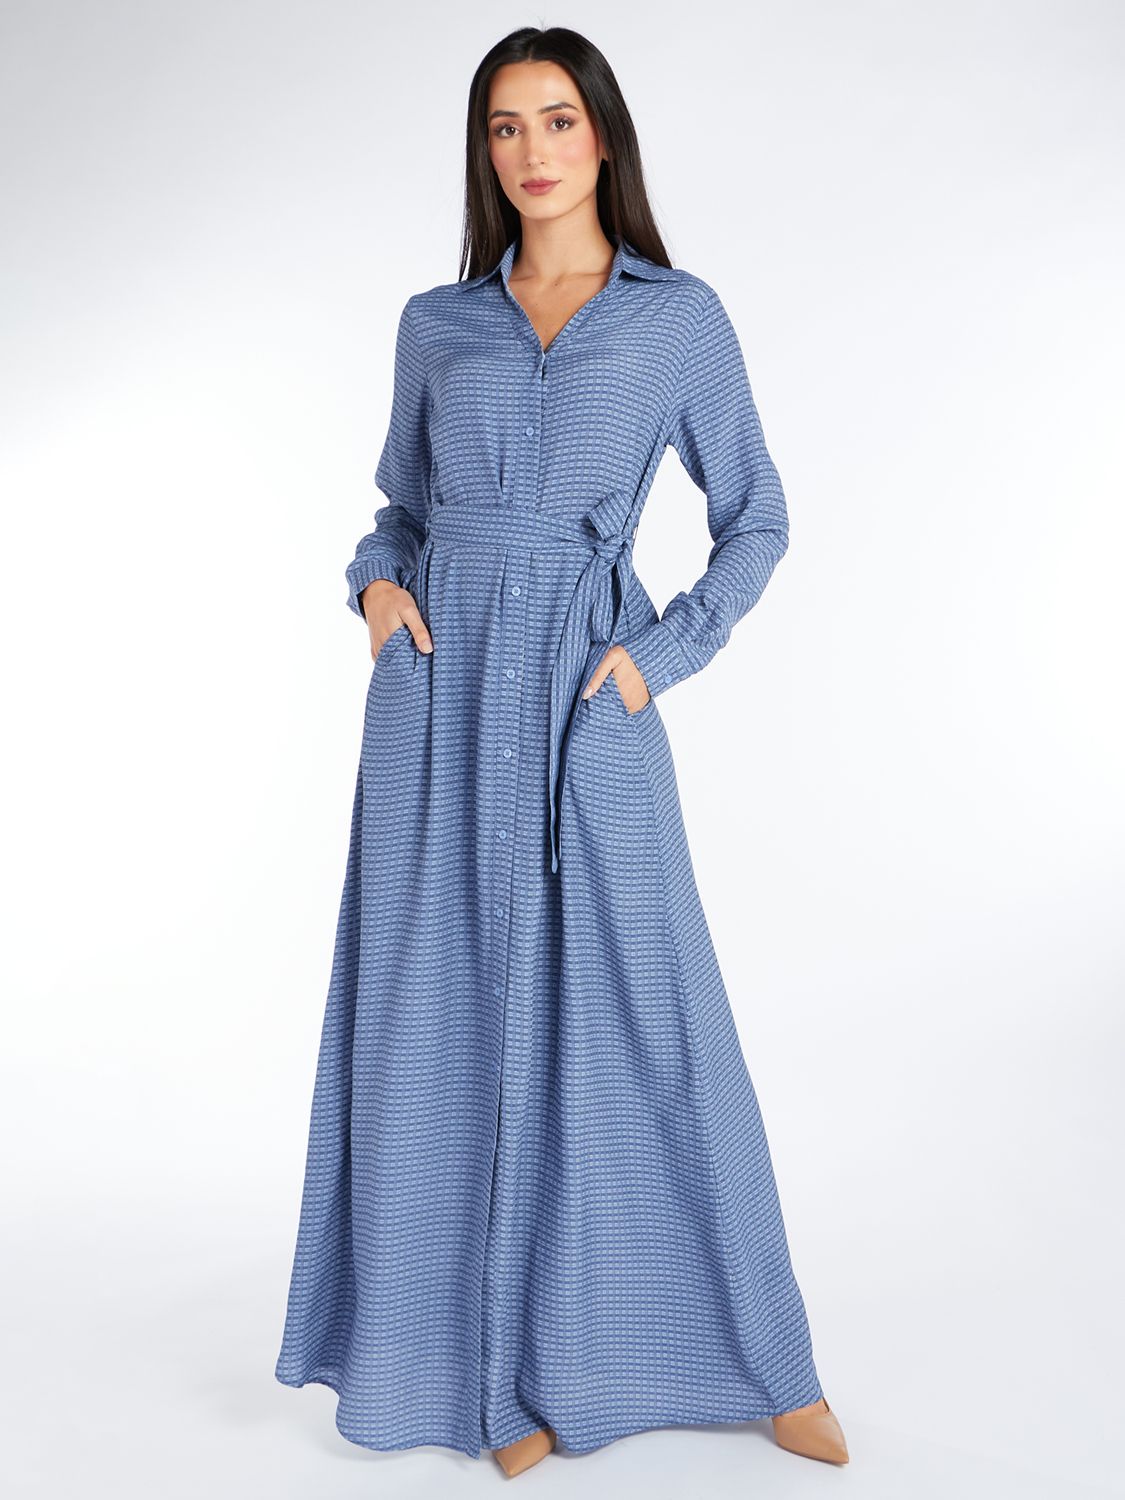 Aab Jacquard Print Maxi Dress, Blue, S Regular